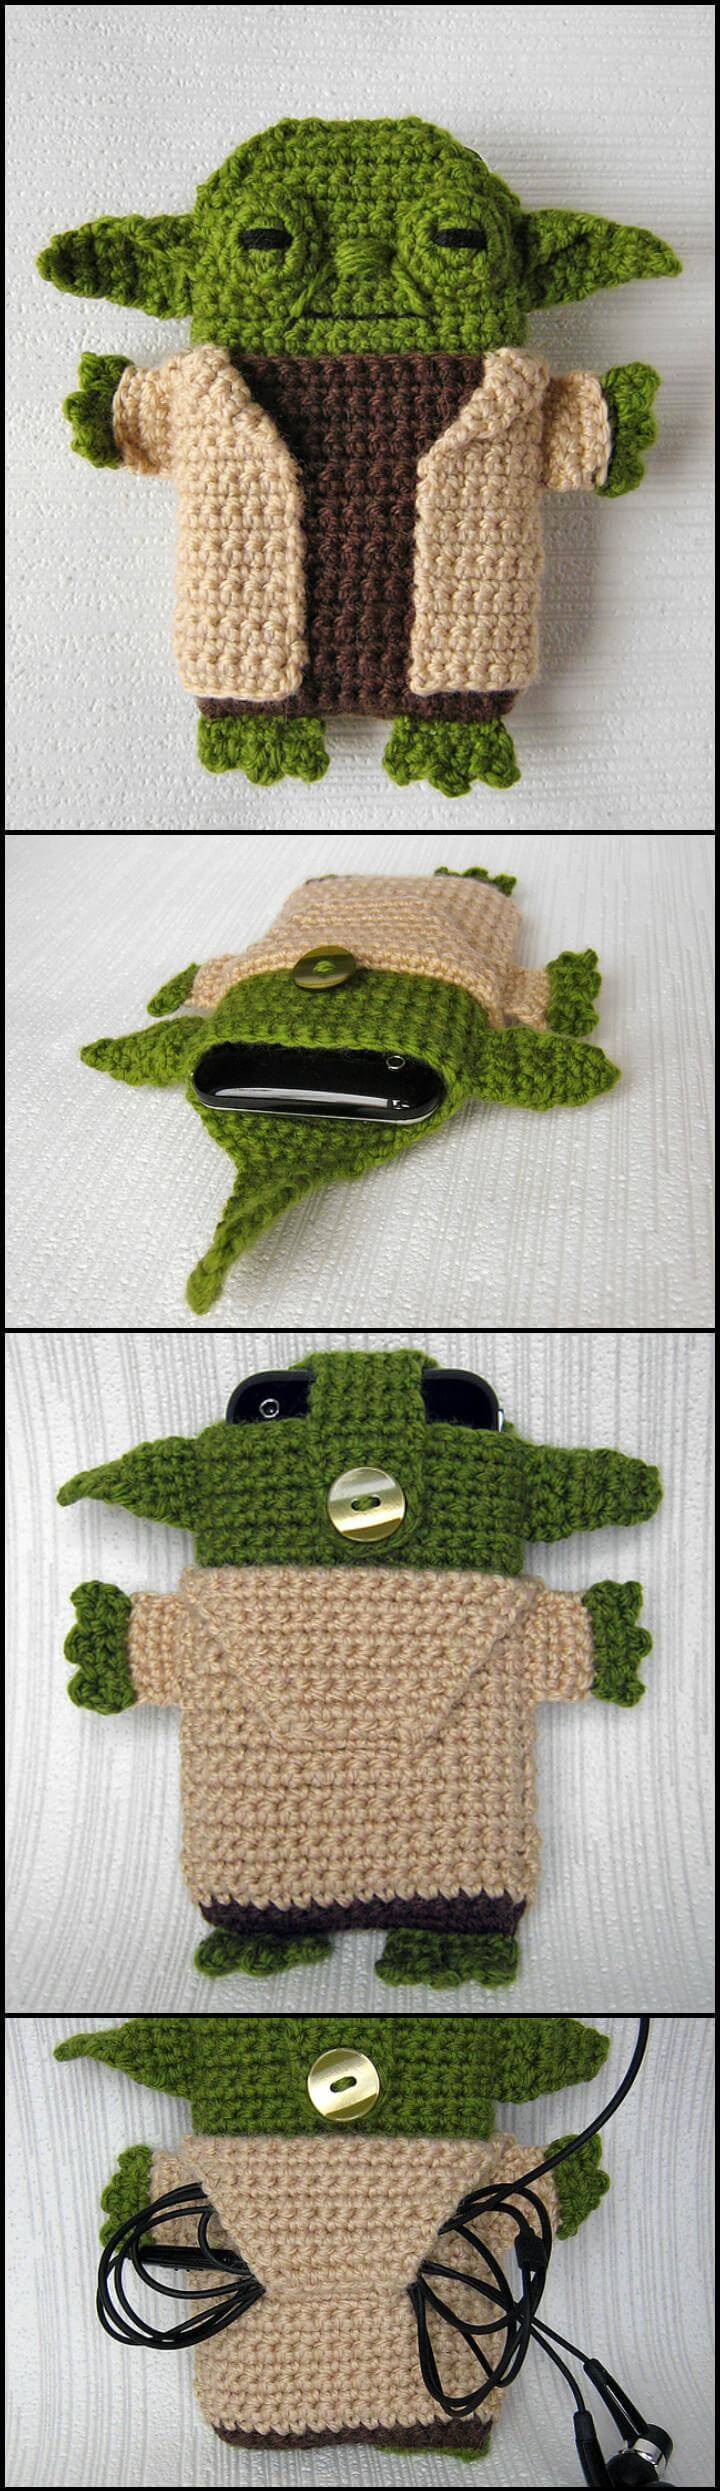 easy crochet star wars yoda iPhone case pattern